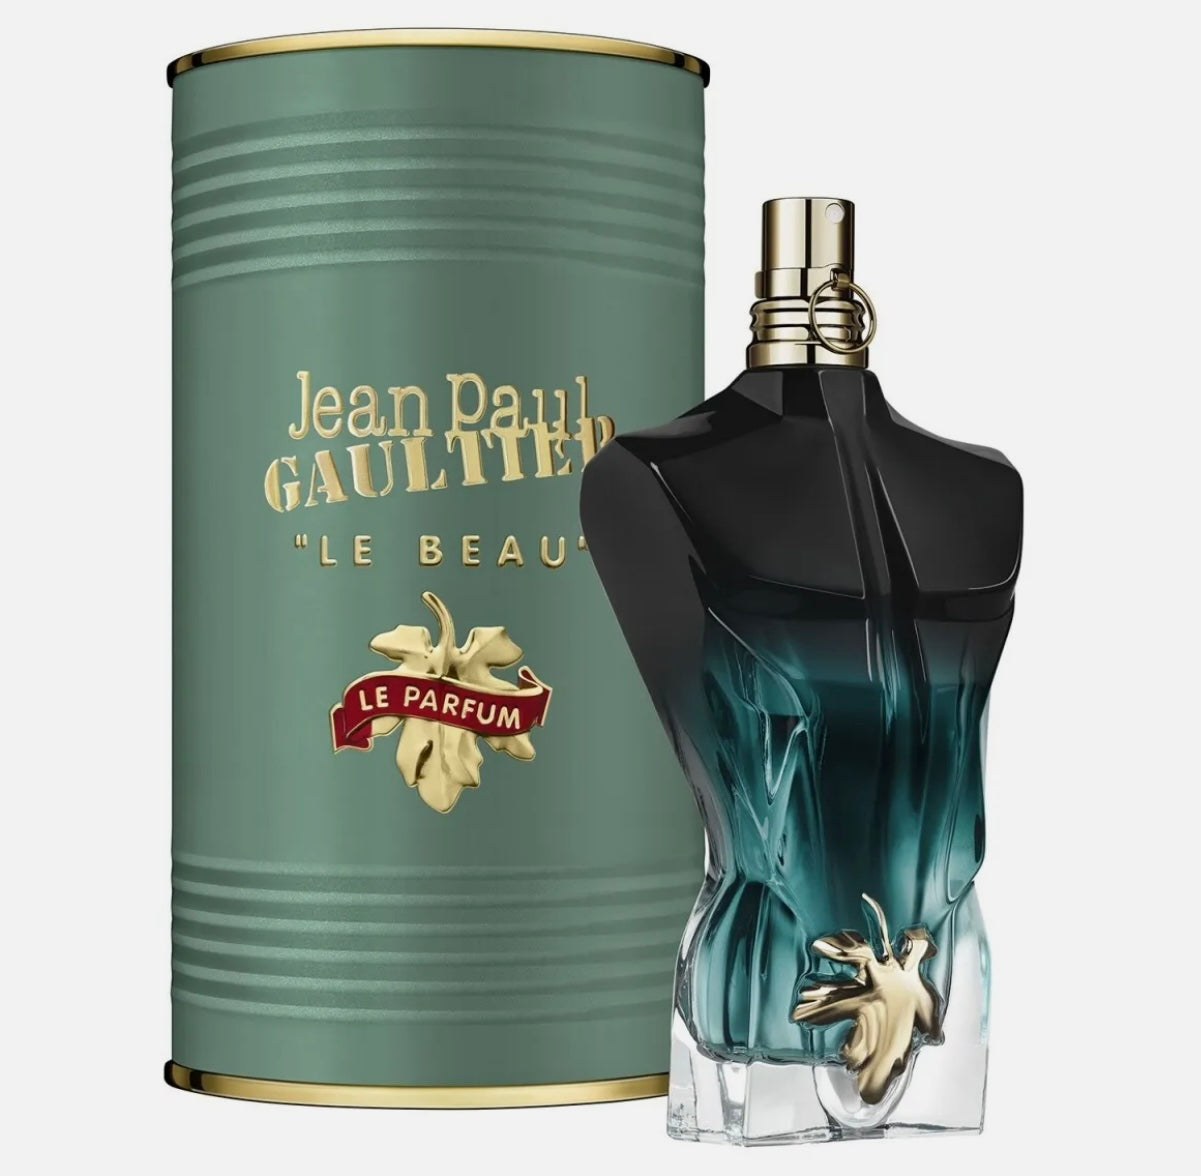 Jean Paul Gaultier- Le Beau- Le Parfum